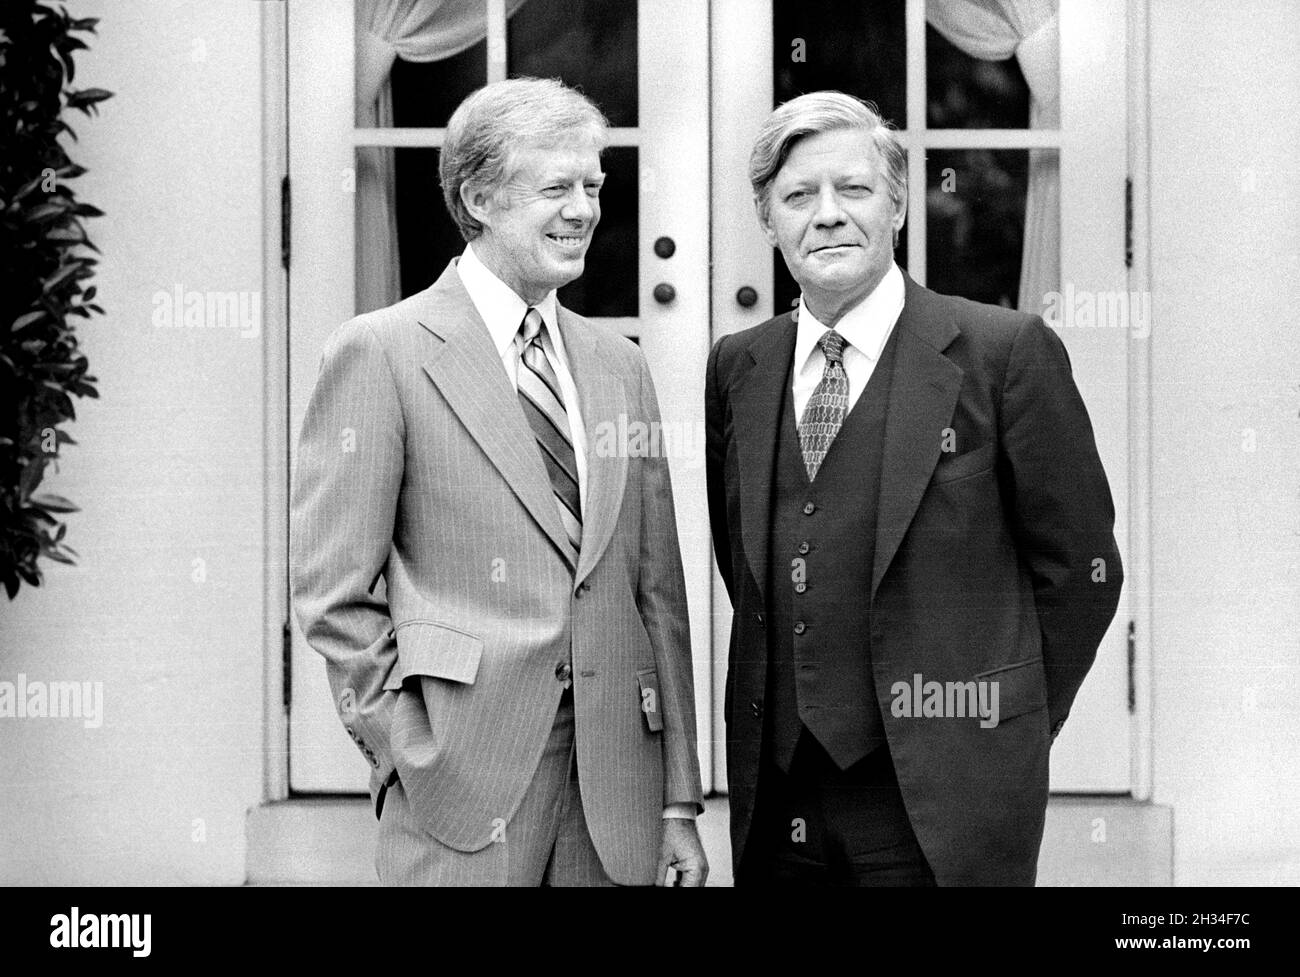 US-Präsident Jimmy Carter mit dem Bundeskanzler Helmut Schmidt, dem Weißen Haus, Washington, D.C., USA, Marion S. Trikosko, US News & World Report Magazine Collection, 6. Juni 1979 Stockfoto